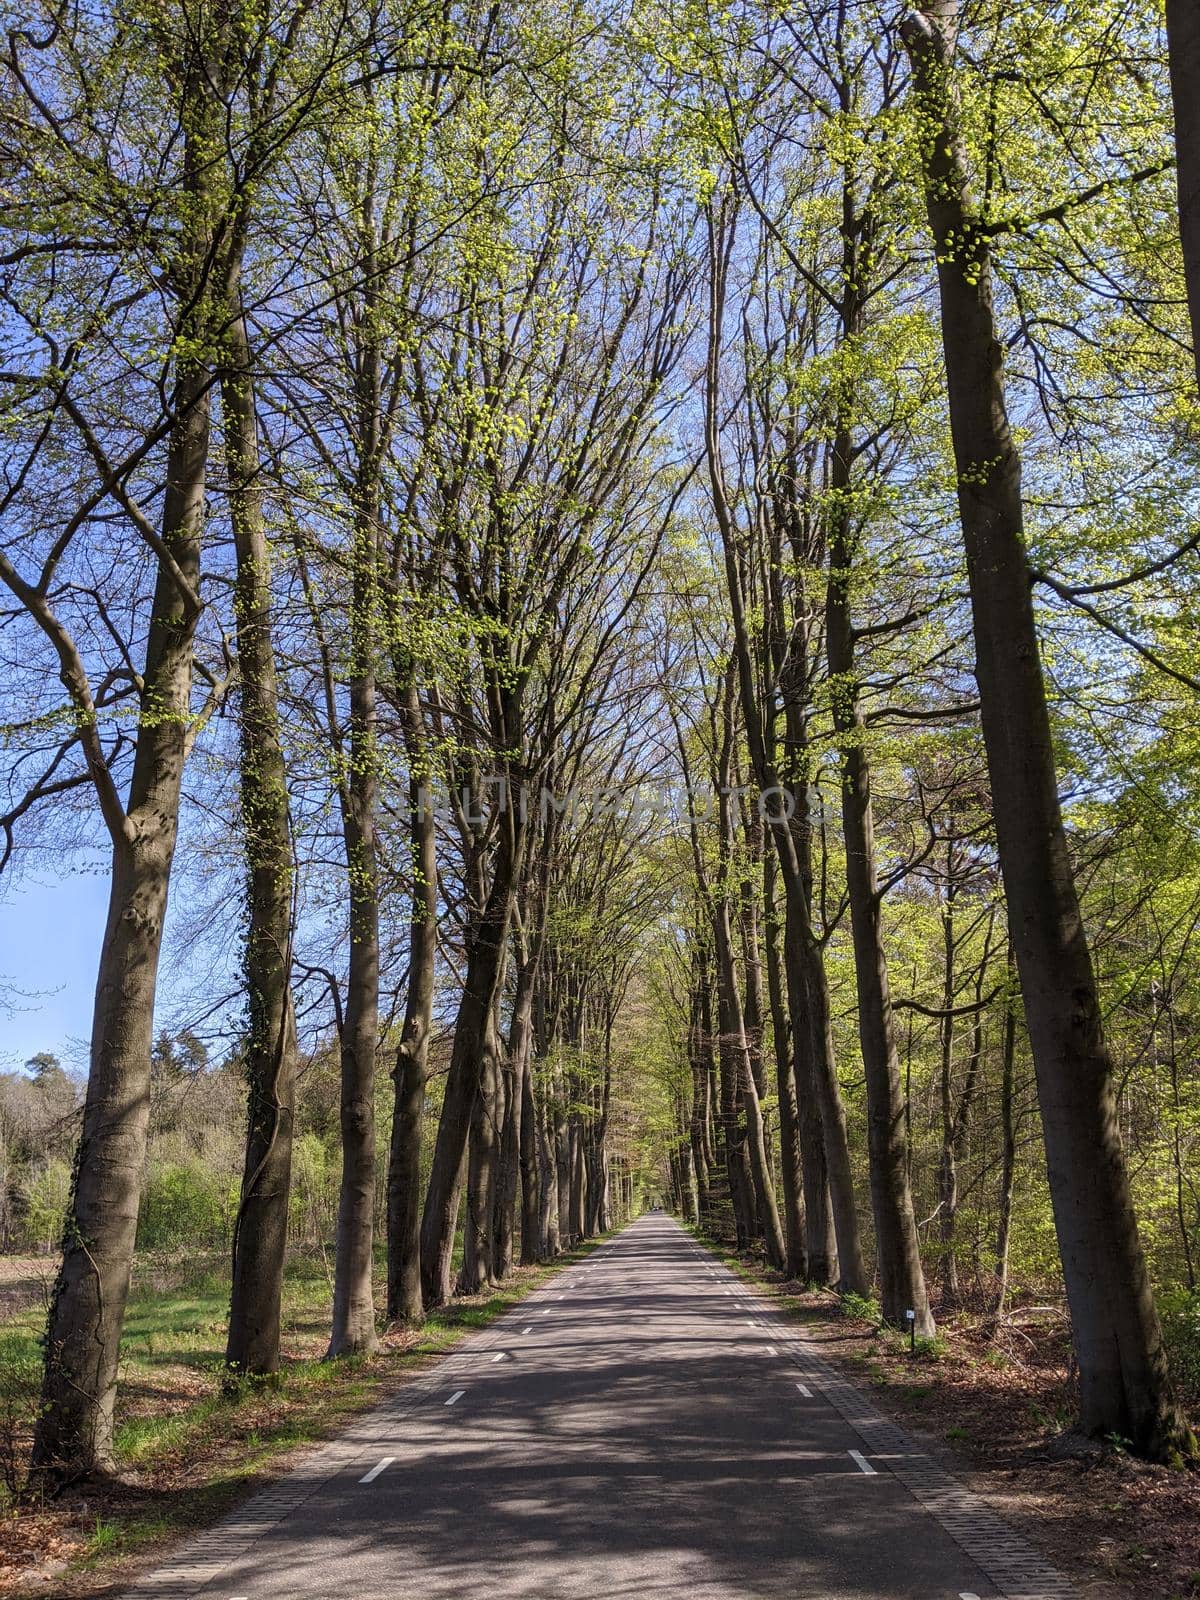 Road through the forest around Vorden during spring in Gelderland, The Netherlands